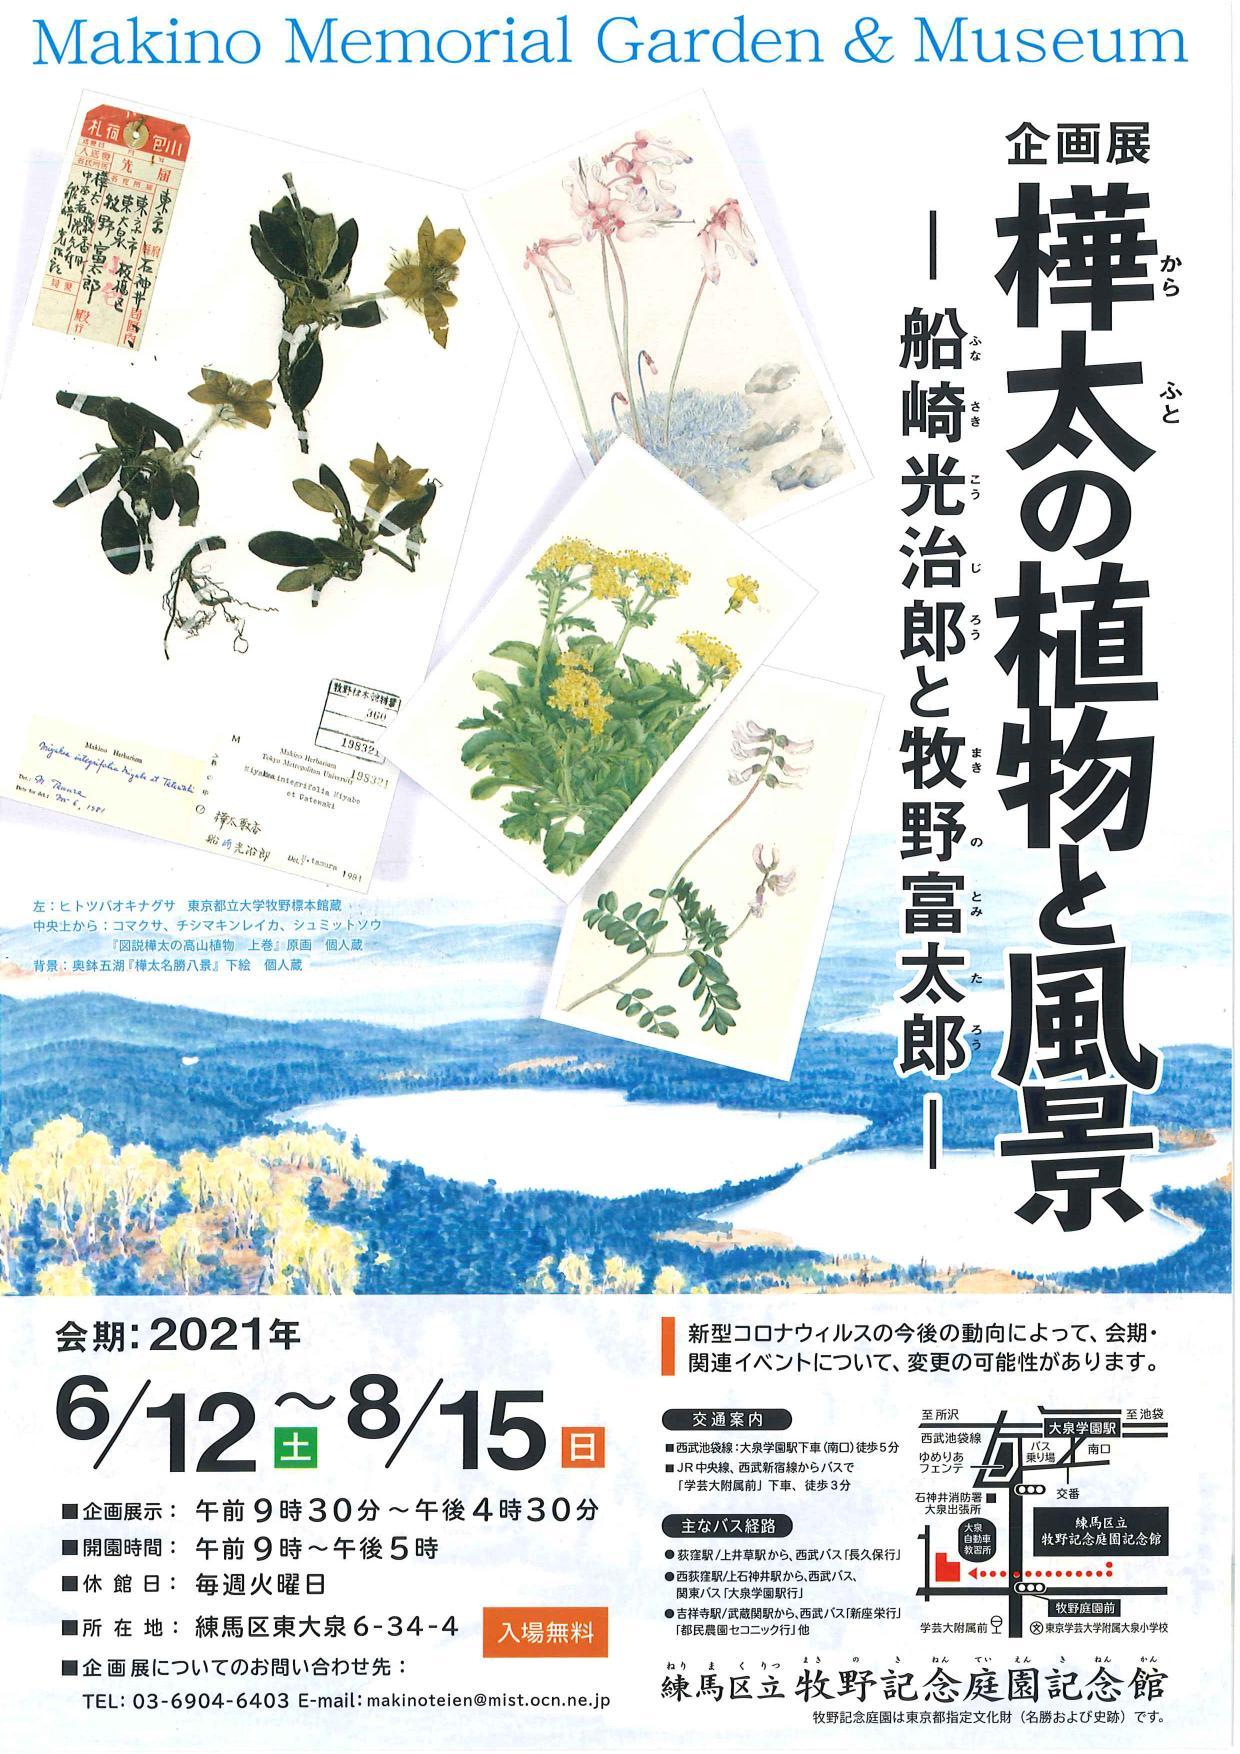 企画展「樺太の植物と風景」